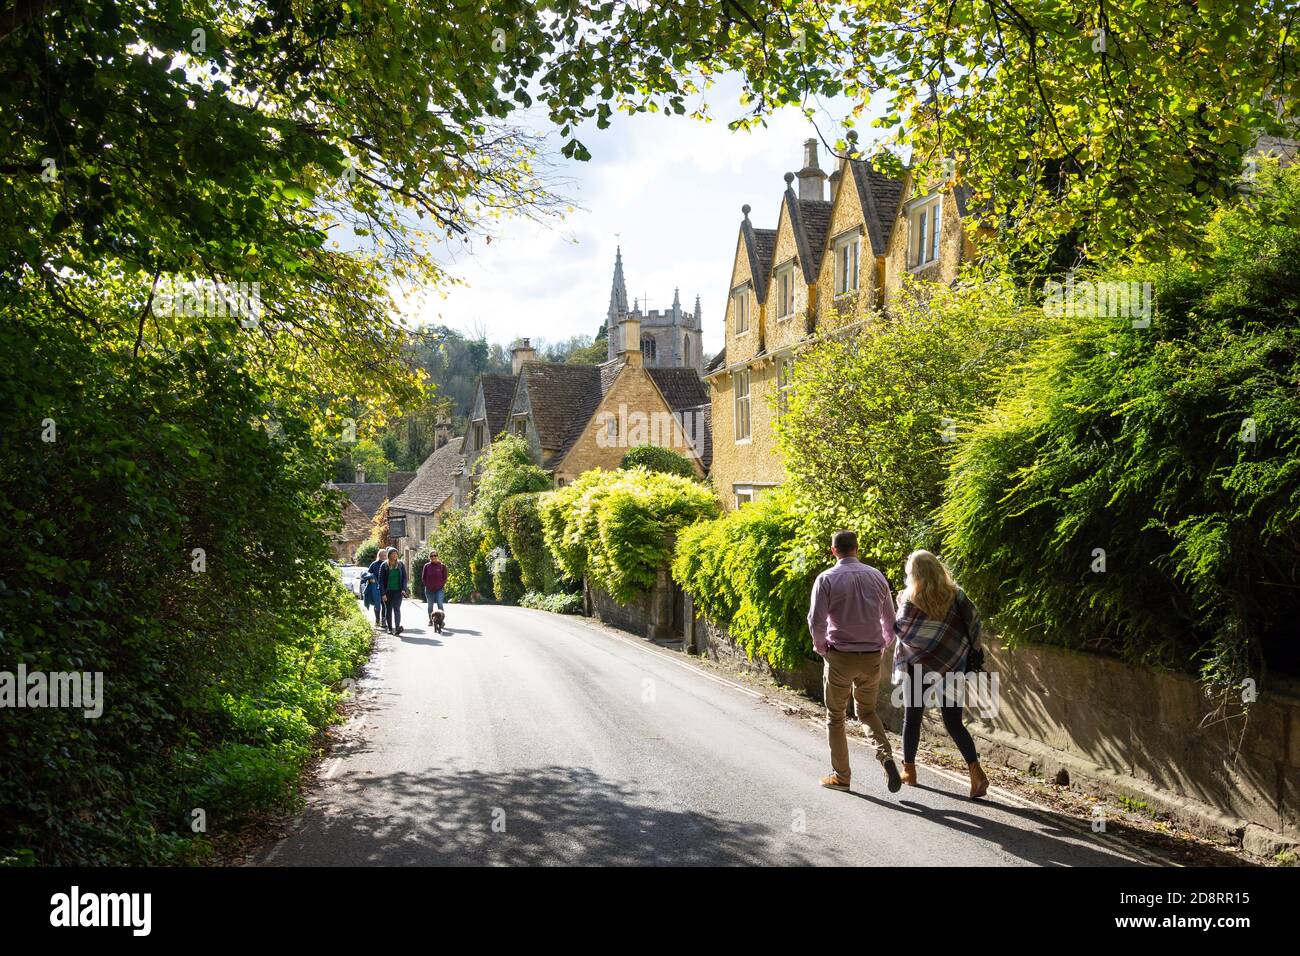 Vue sur le village, la rue, le château de Combe, Wiltshire, Angleterre, Royaume-Uni Banque D'Images